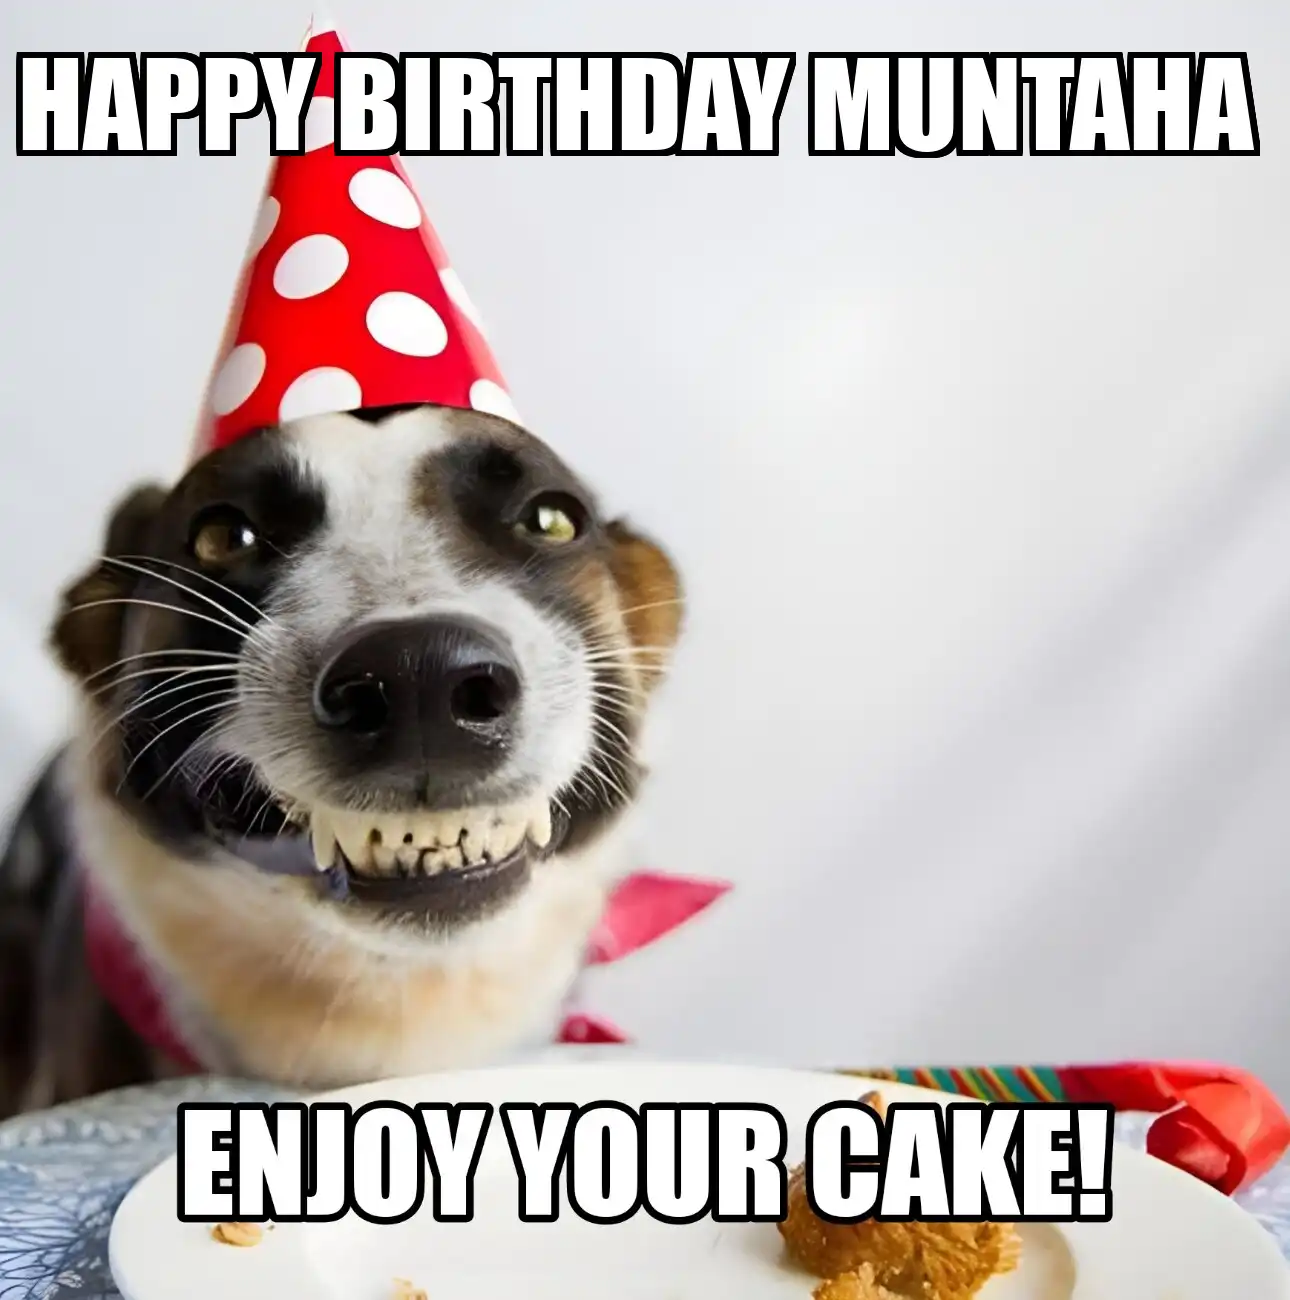 Happy Birthday Muntaha Enjoy Your Cake Dog Meme